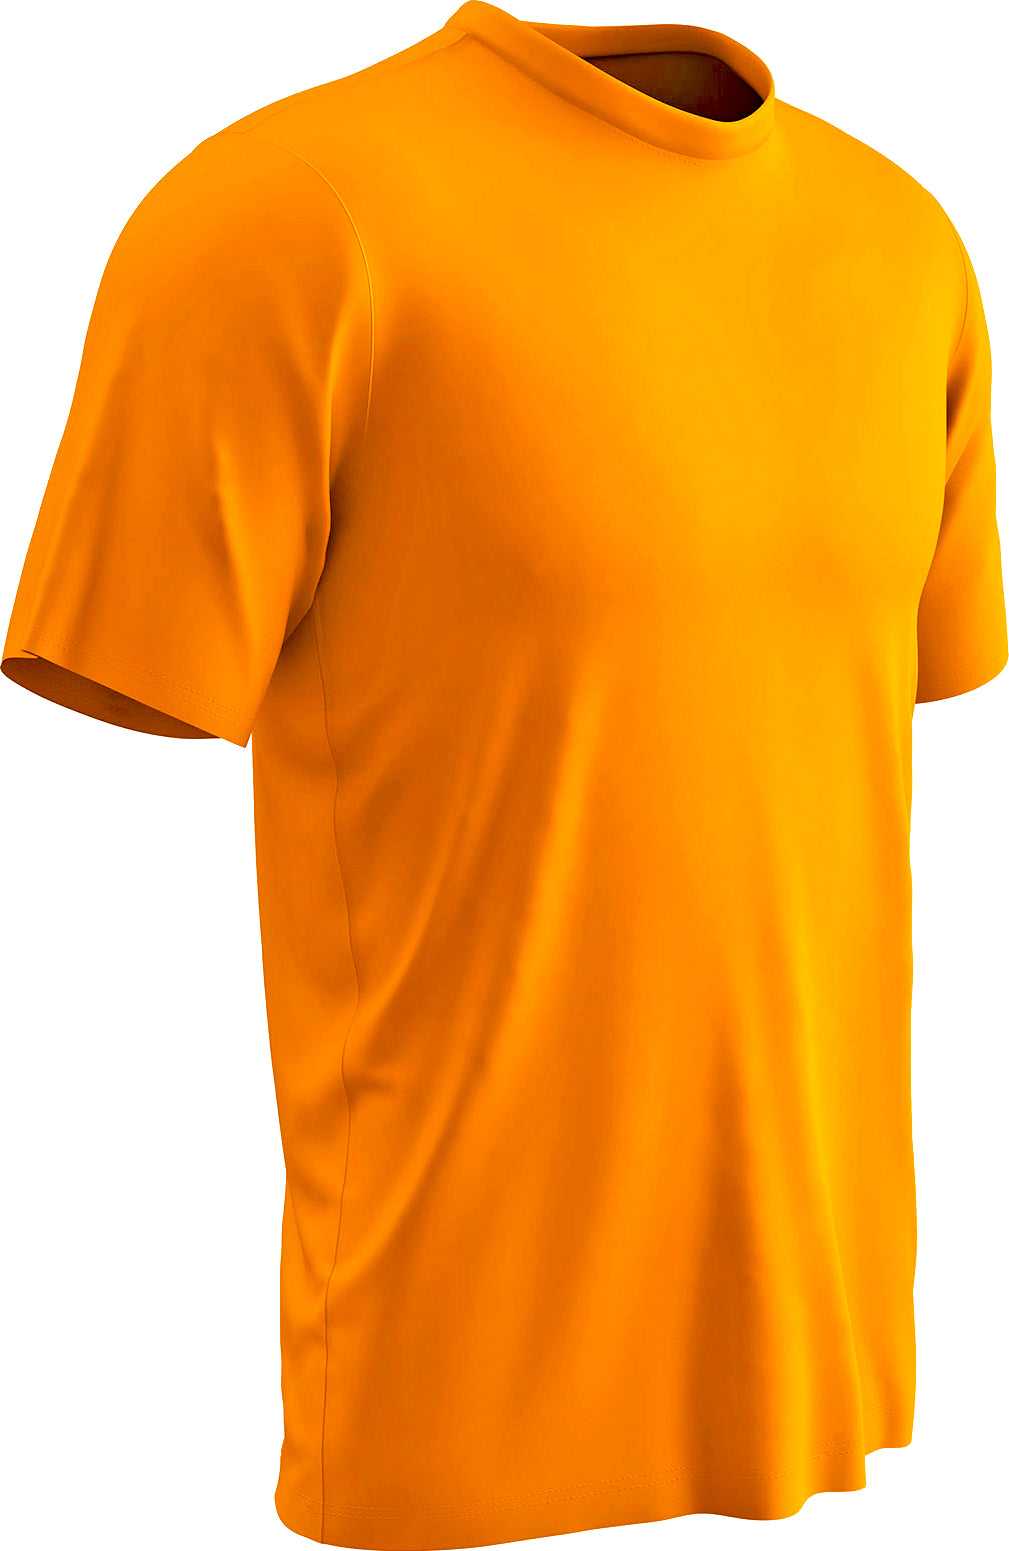 Champro BST99 Vision T-Shirt - Neon Orange - HIT a Double